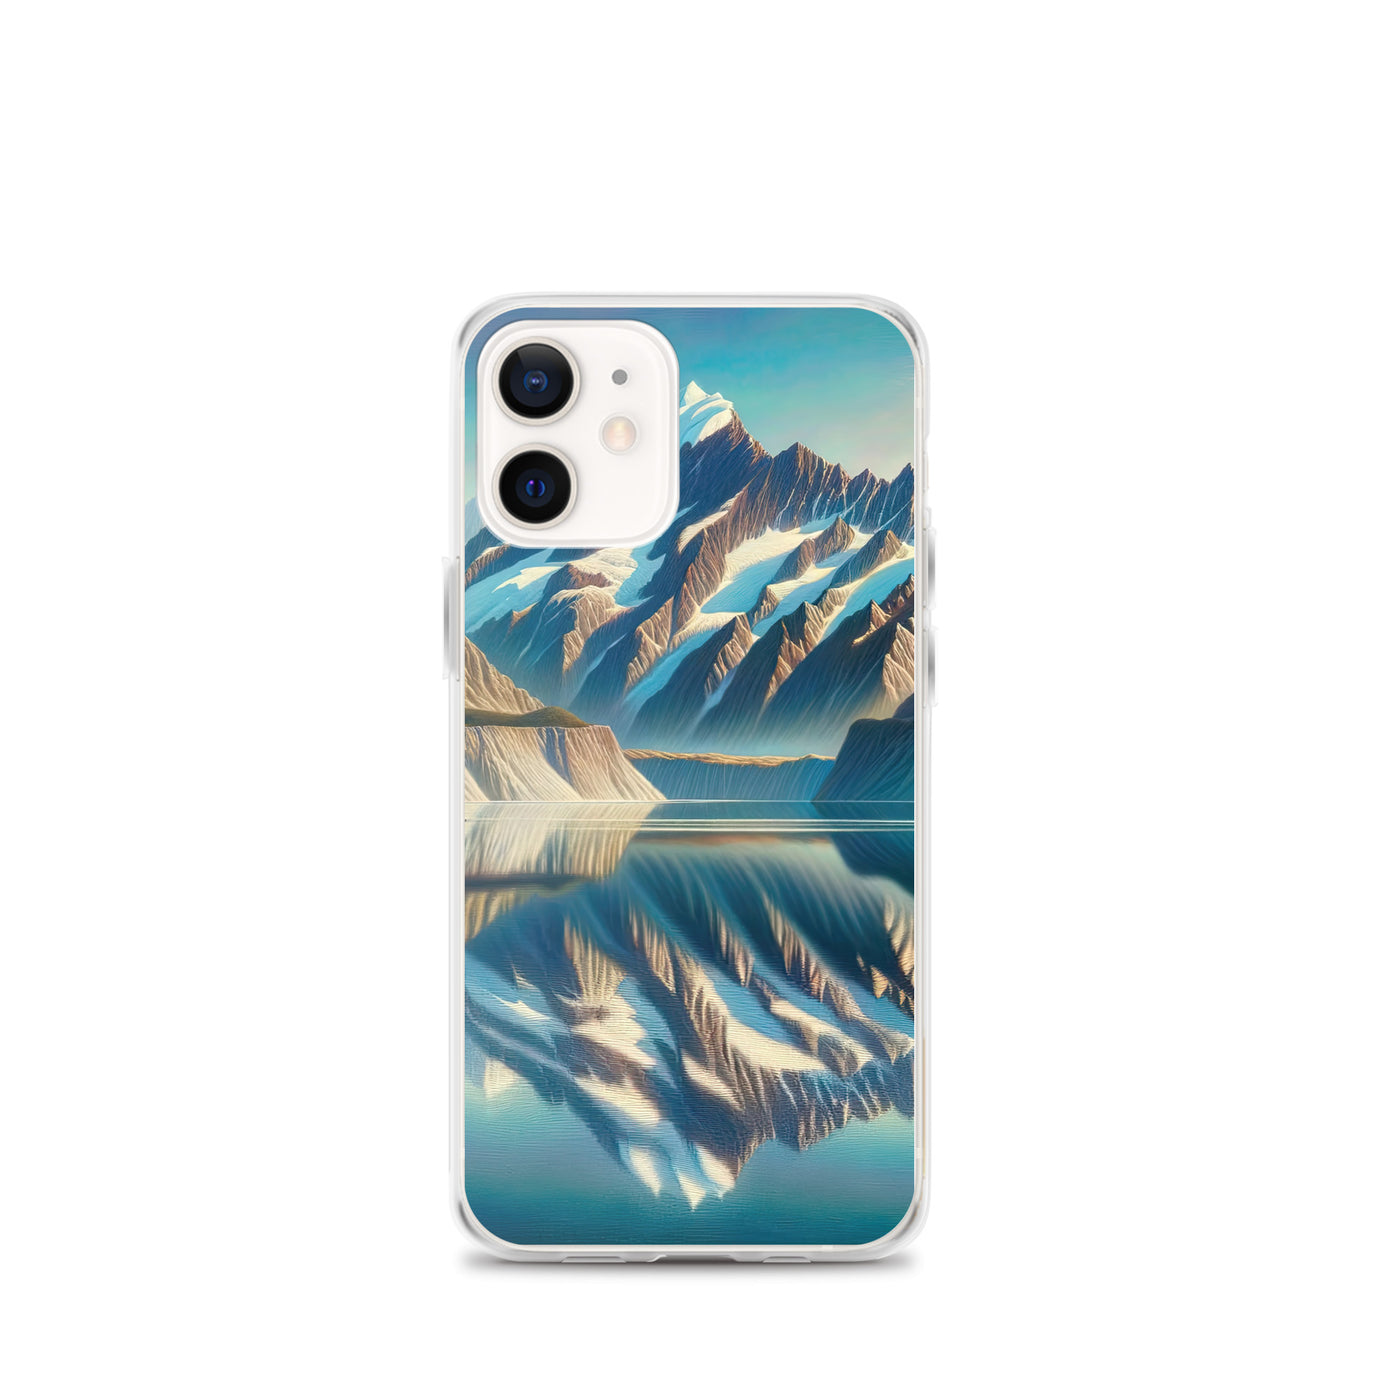 Ölgemälde eines unberührten Sees, der die Bergkette spiegelt - iPhone Schutzhülle (durchsichtig) berge xxx yyy zzz iPhone 12 mini